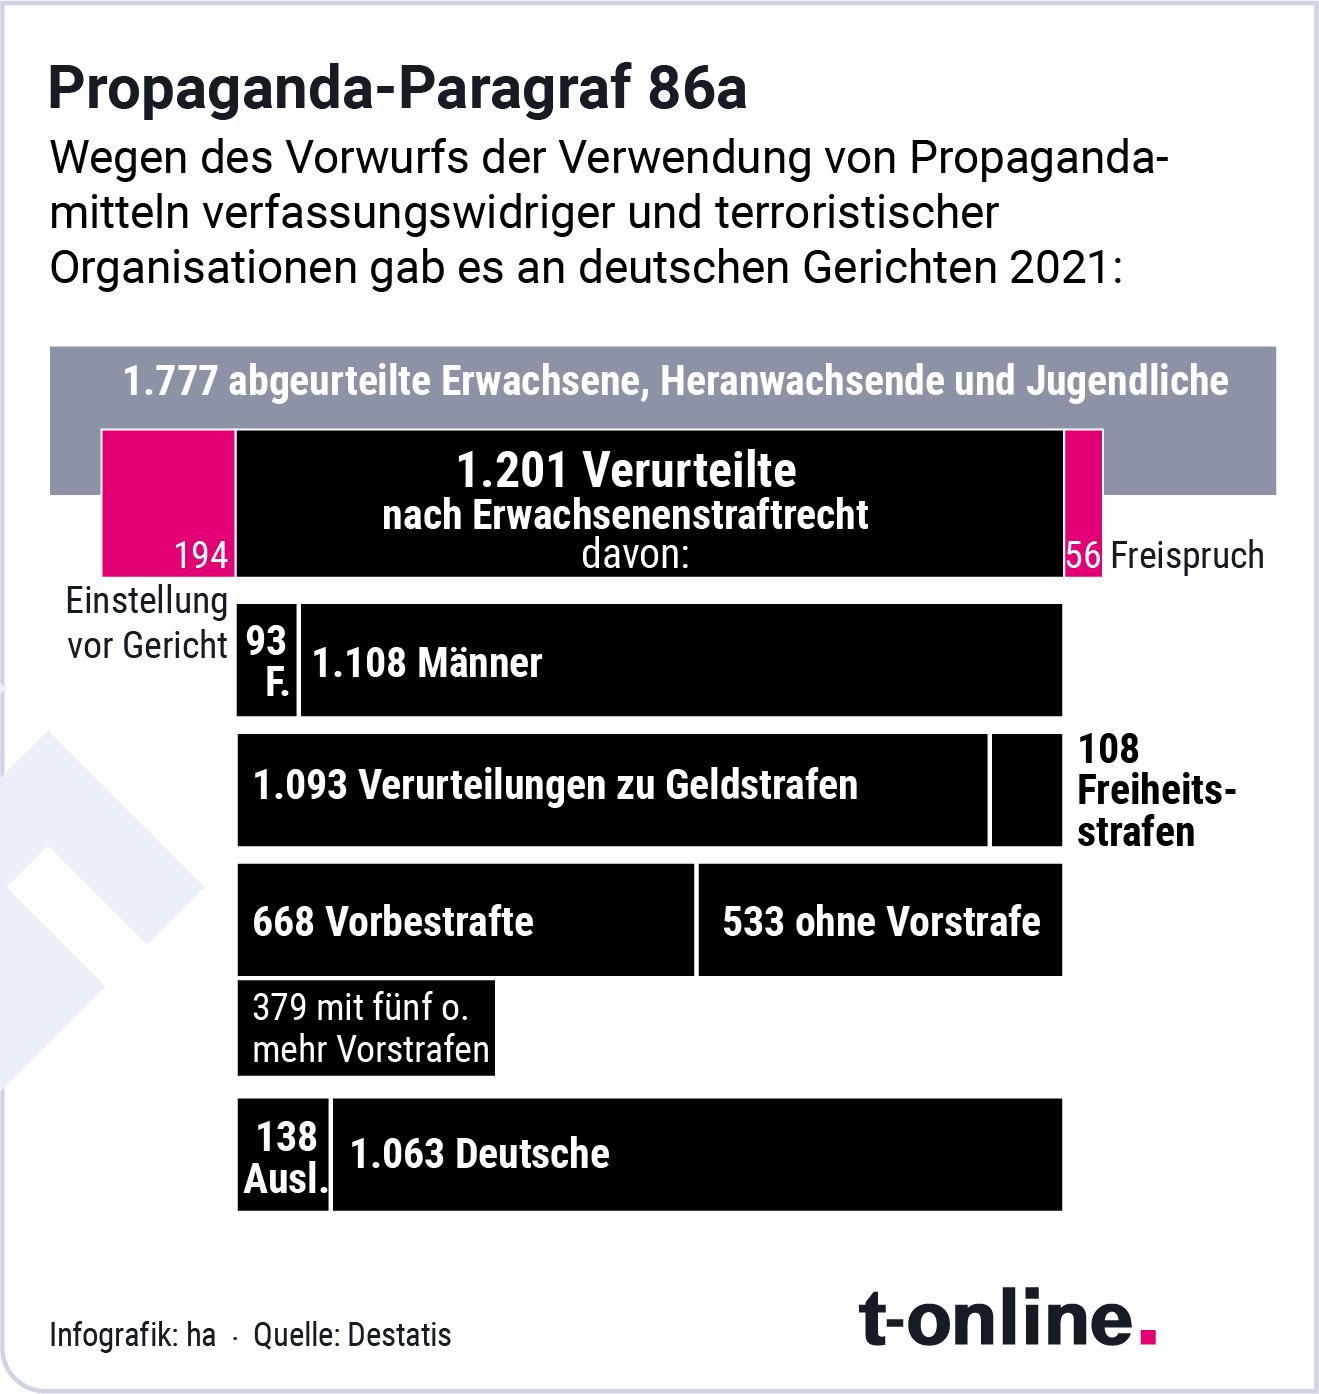 Propaganda-Paragraph 86a